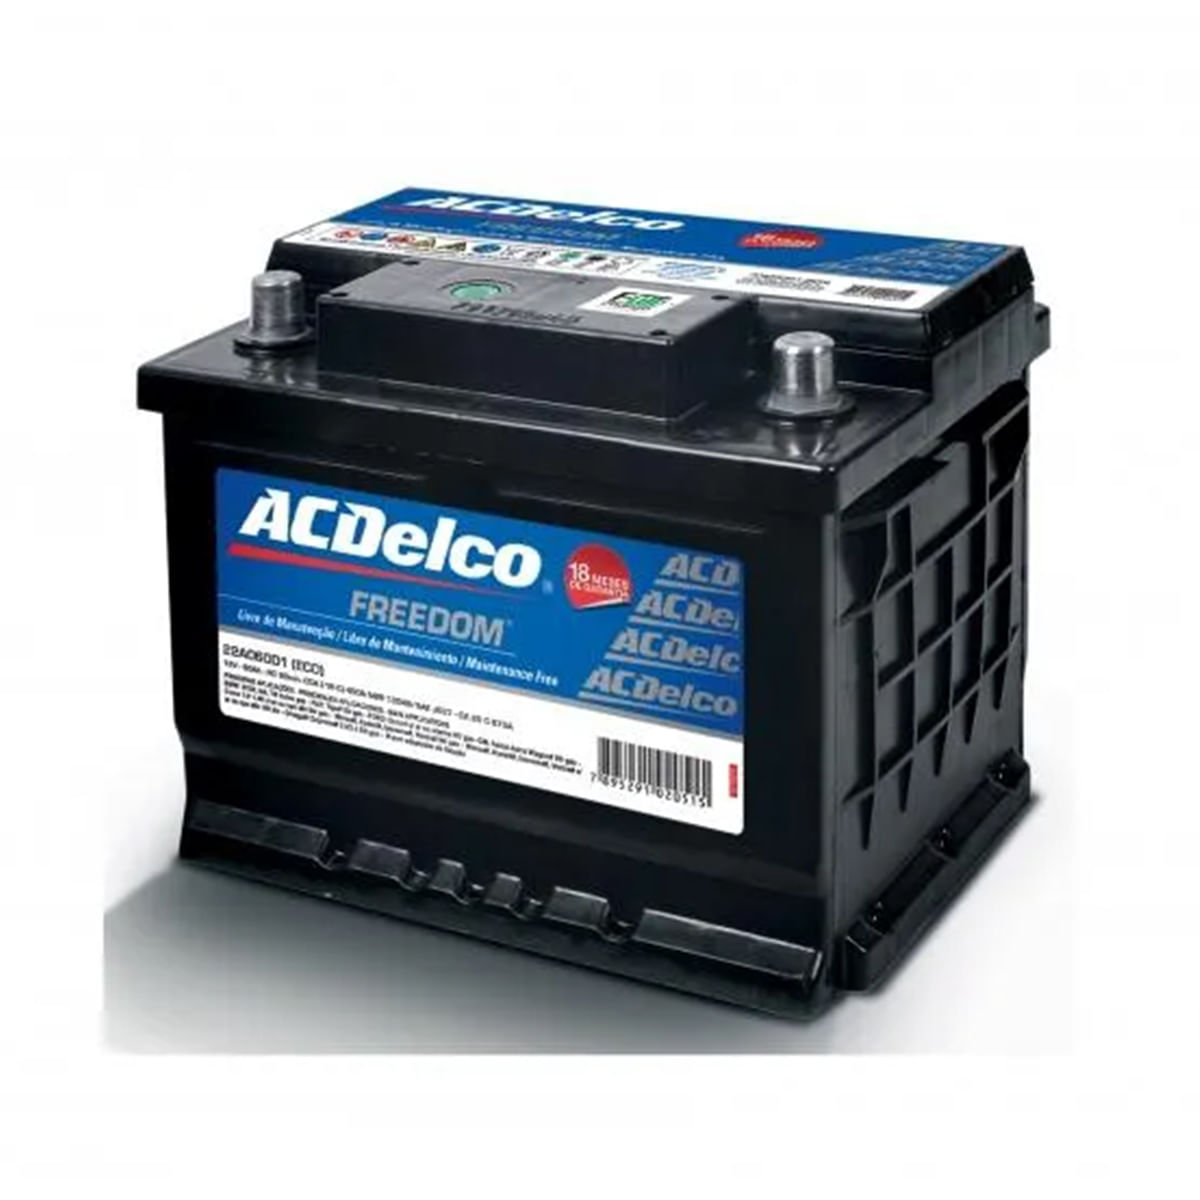 Bateria AcDelco 75 Amperes Caixa Alta Lado Positivo Direito 18 Meses de Garantia